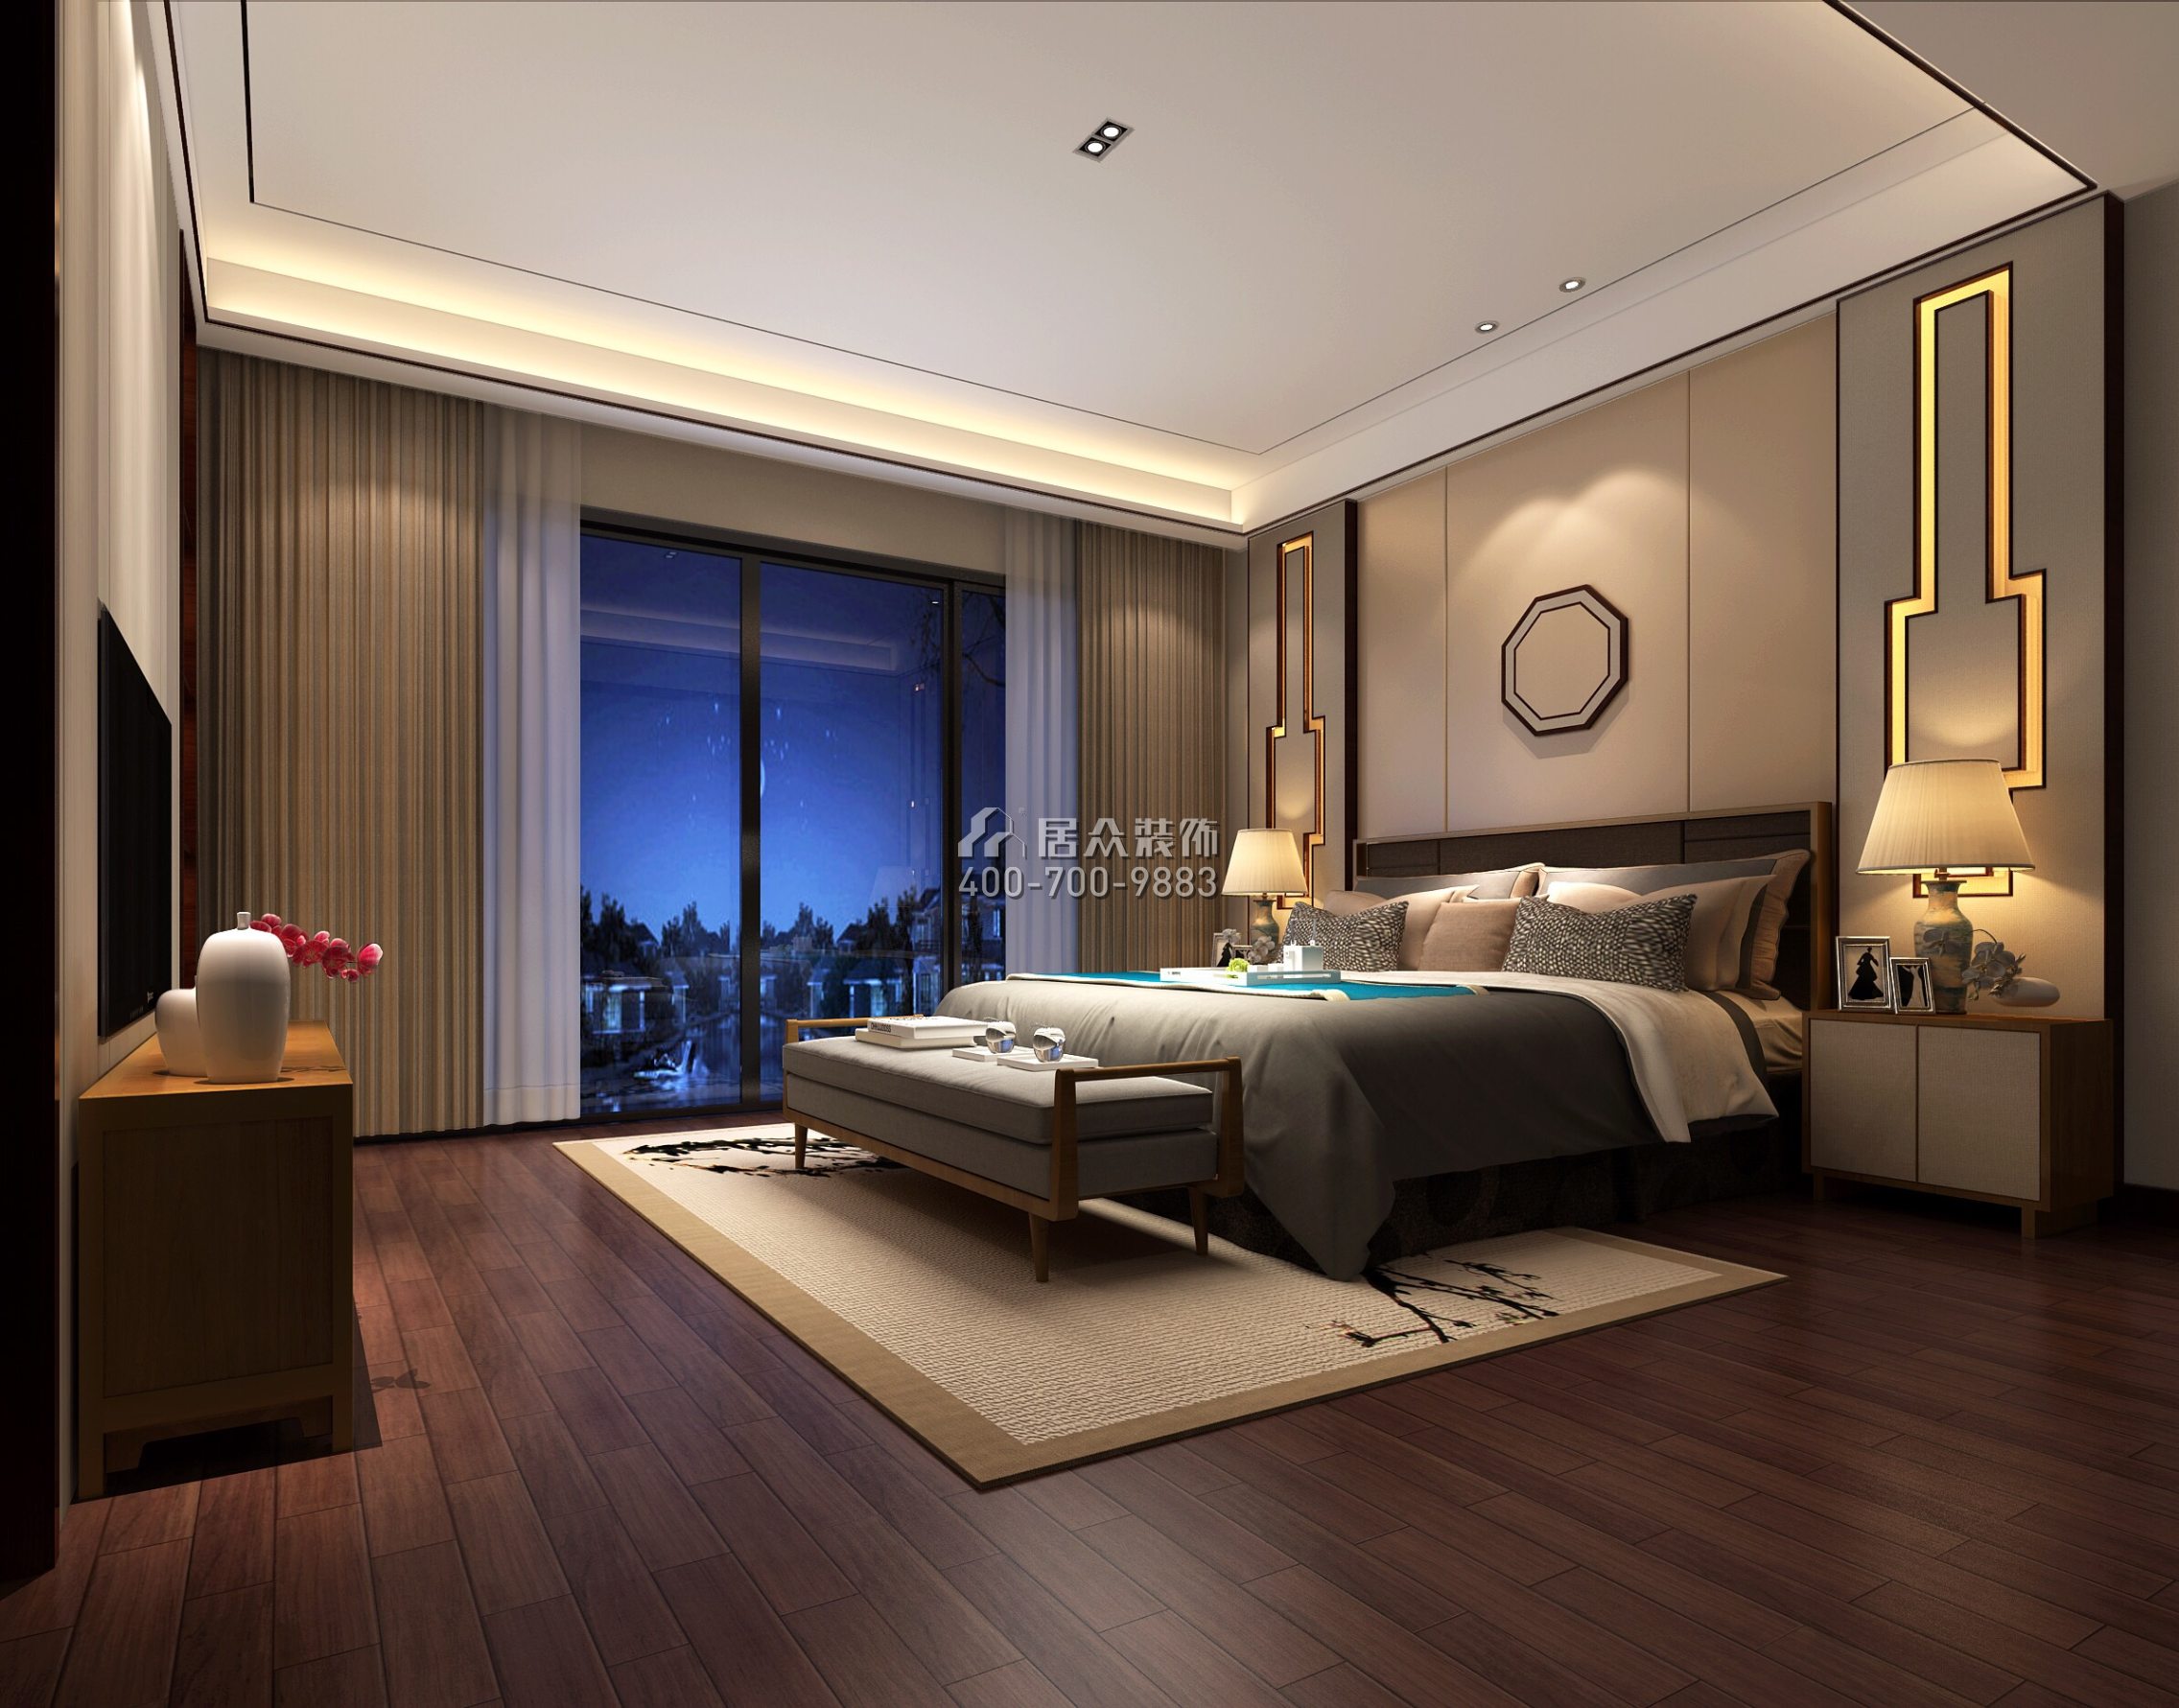 合景誉山国际450平方米中式风格别墅户型卧室装修效果图